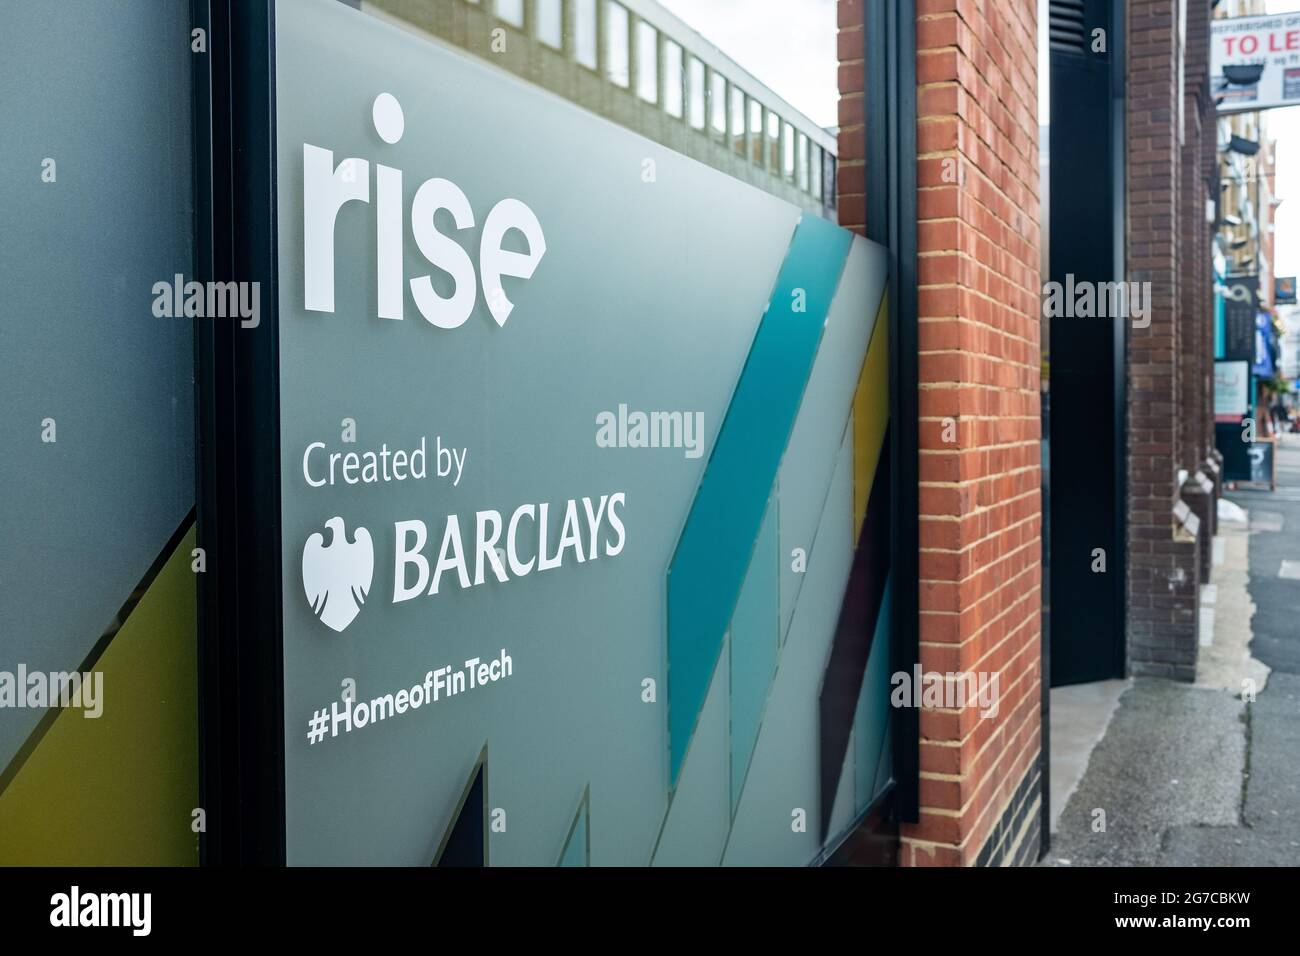 Londra - Luglio 2021: Rise by Barclays, uno spazio di lavoro congiunto per incoraggiare l'innovazione nei servizi finanziari. Shoreditch Foto Stock